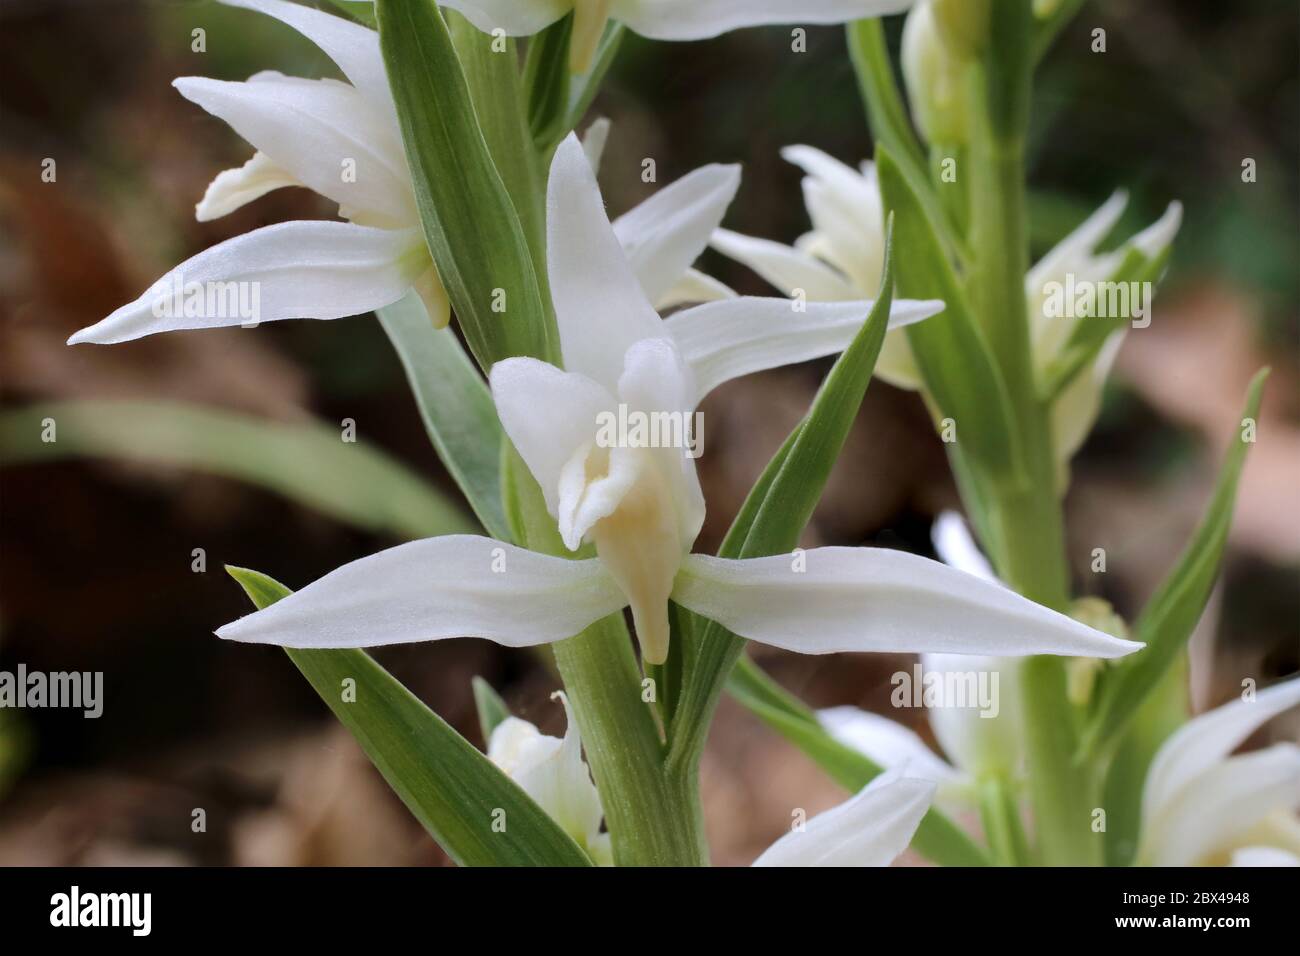 Cephalanthera epipactoides - Wild plant shot in the spring. Stock Photo